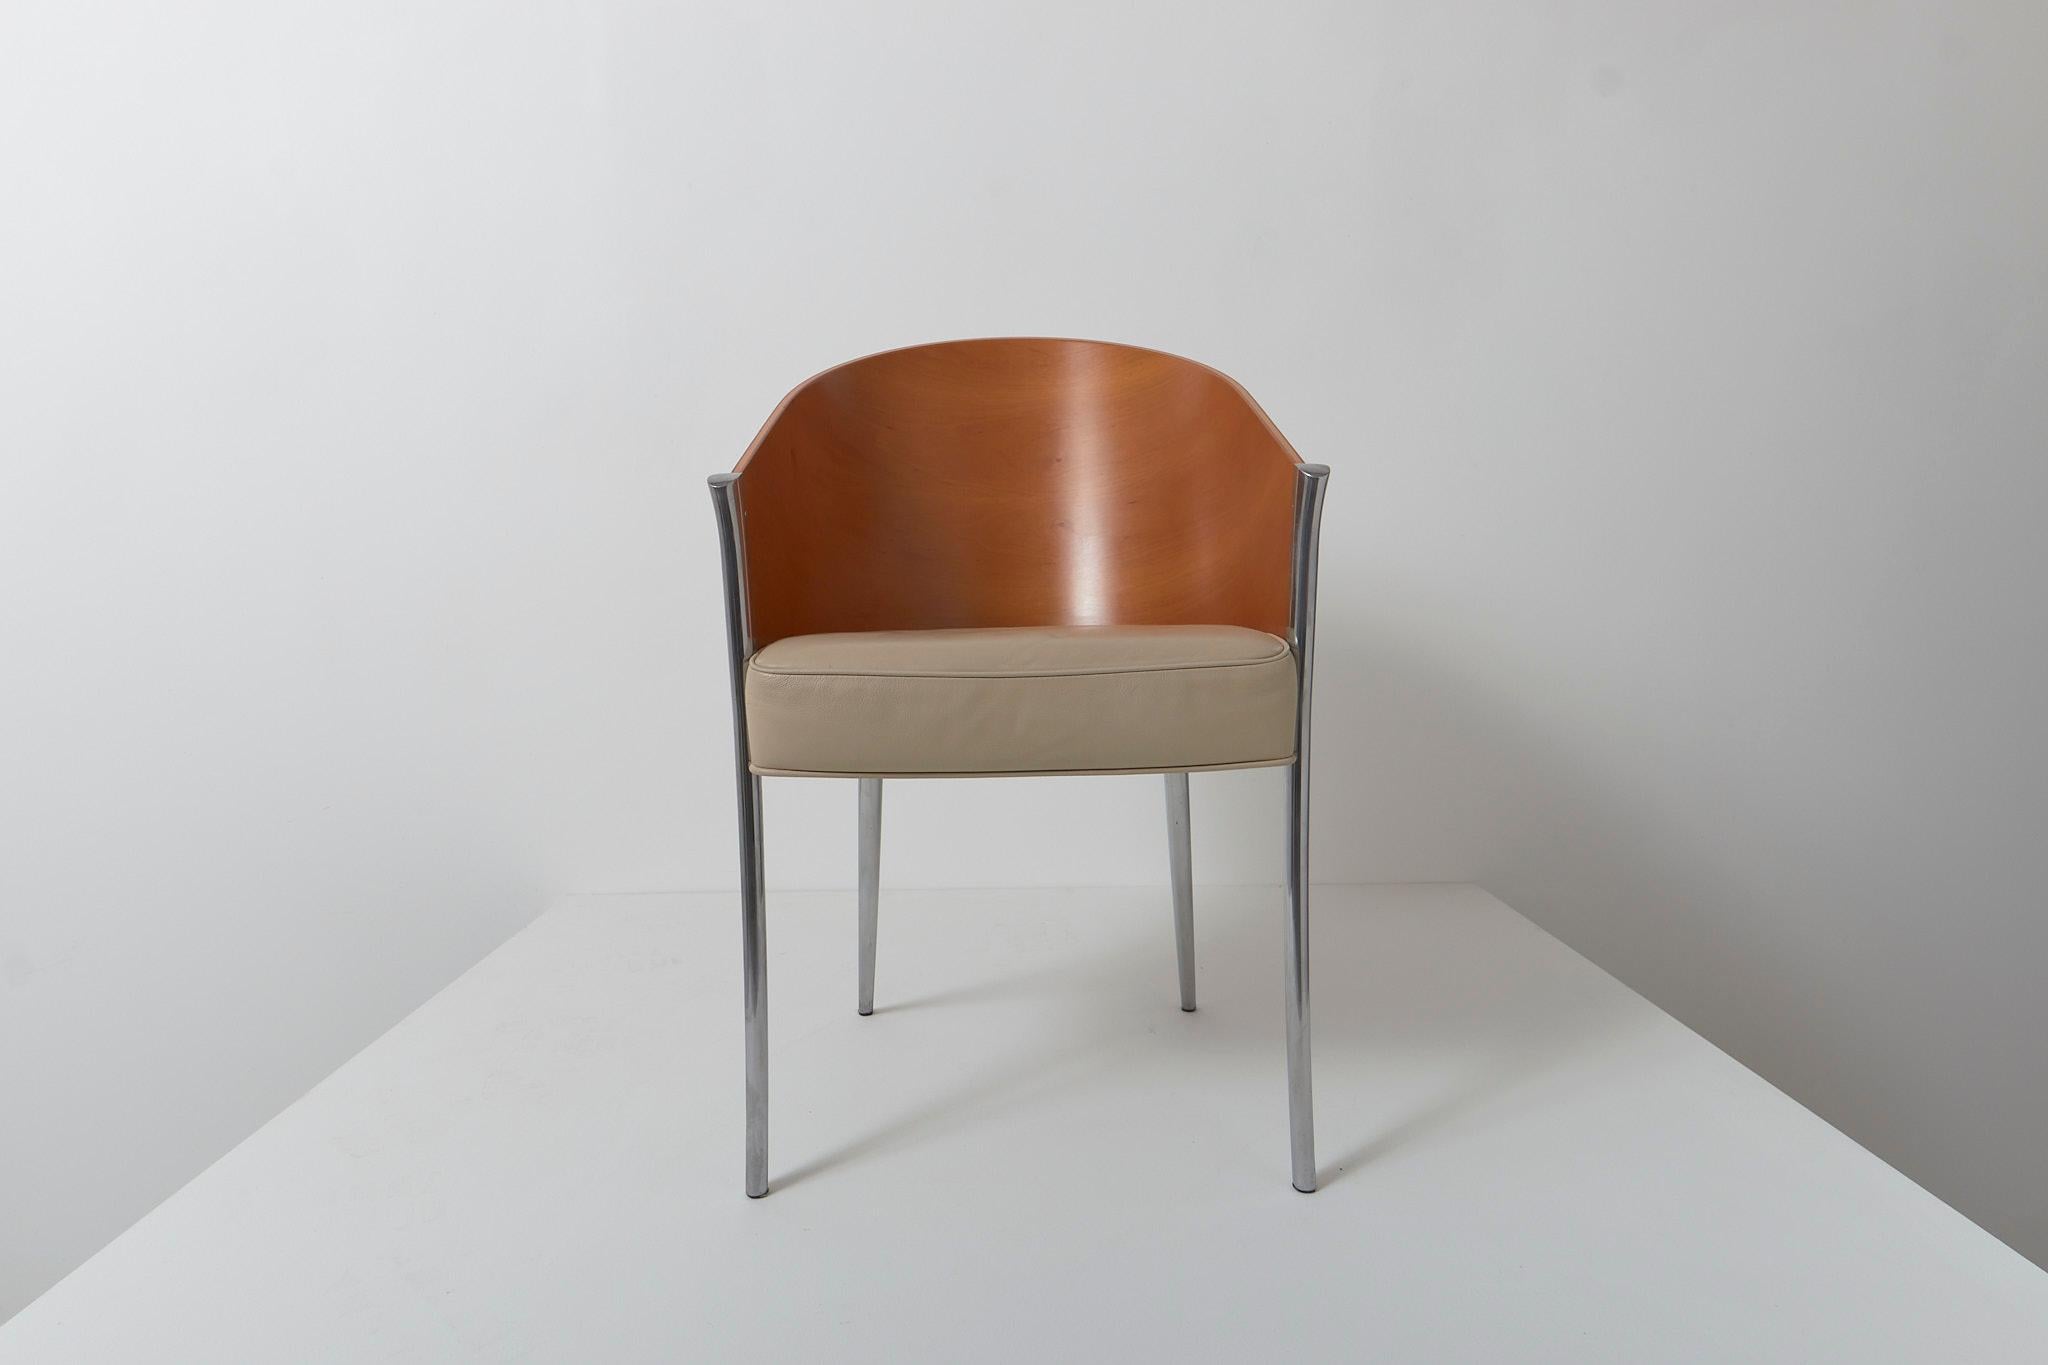 Une chaise King Costes vintage de Philippe Starck pour Aleph, circa 1992. Dossier incurvé en contreplaqué, pieds en aluminium et assise en cuir beige.

L'état est excellent, il y a deux petits éclats sur le placage (photo).

Dimensions : H80cm